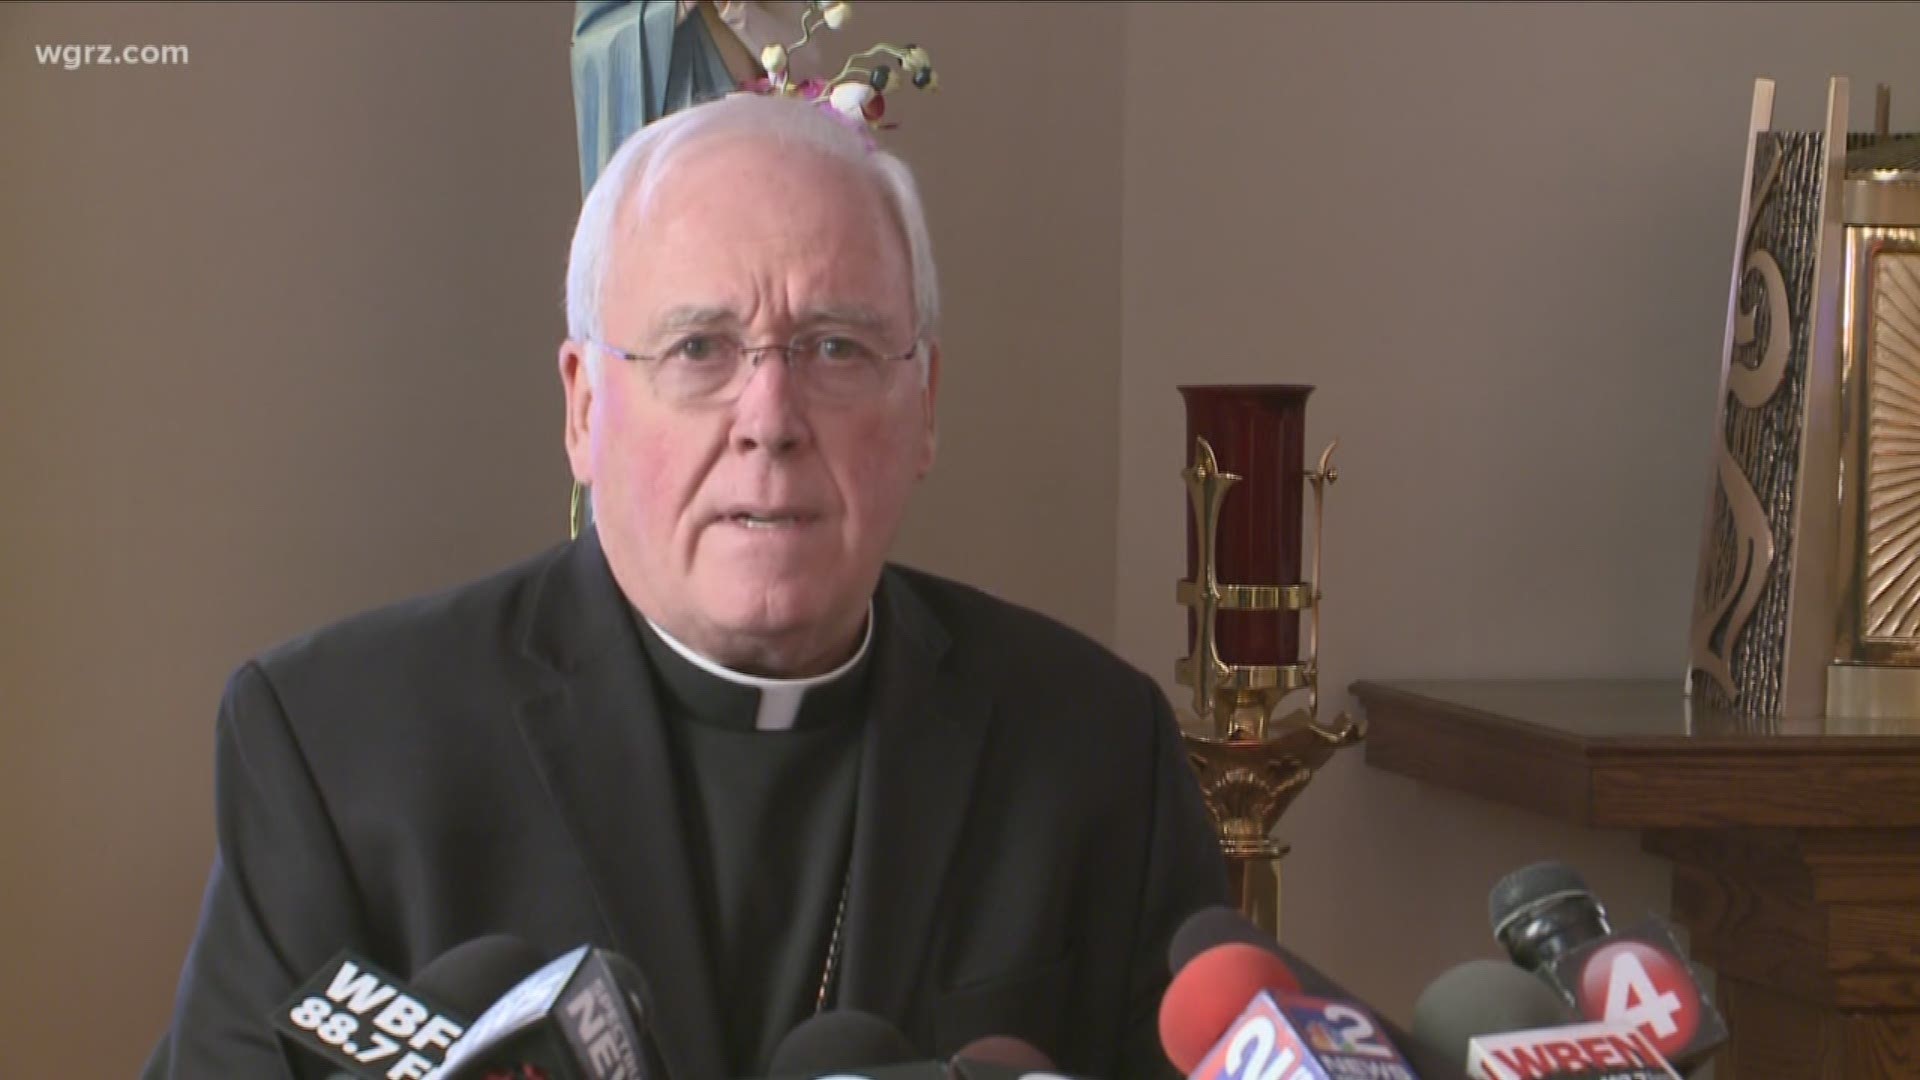 Details On Bishop's "Task Force" Unclear